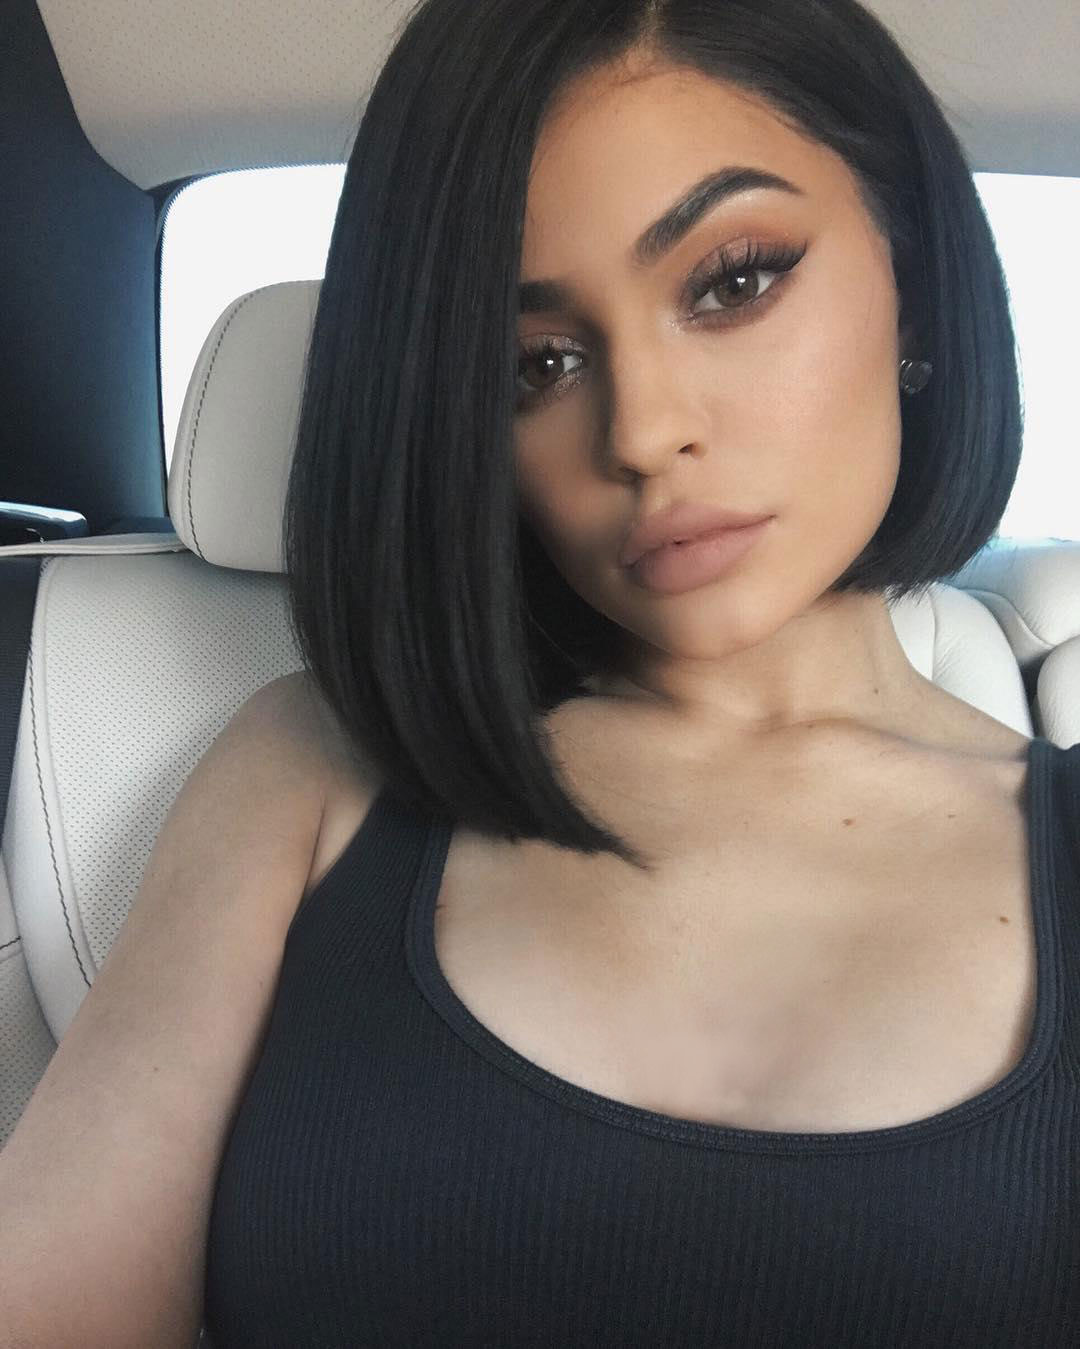 Kylie Jenner Ubah Gaya Rambut Jadi Pendek Lebih Cantik Atau